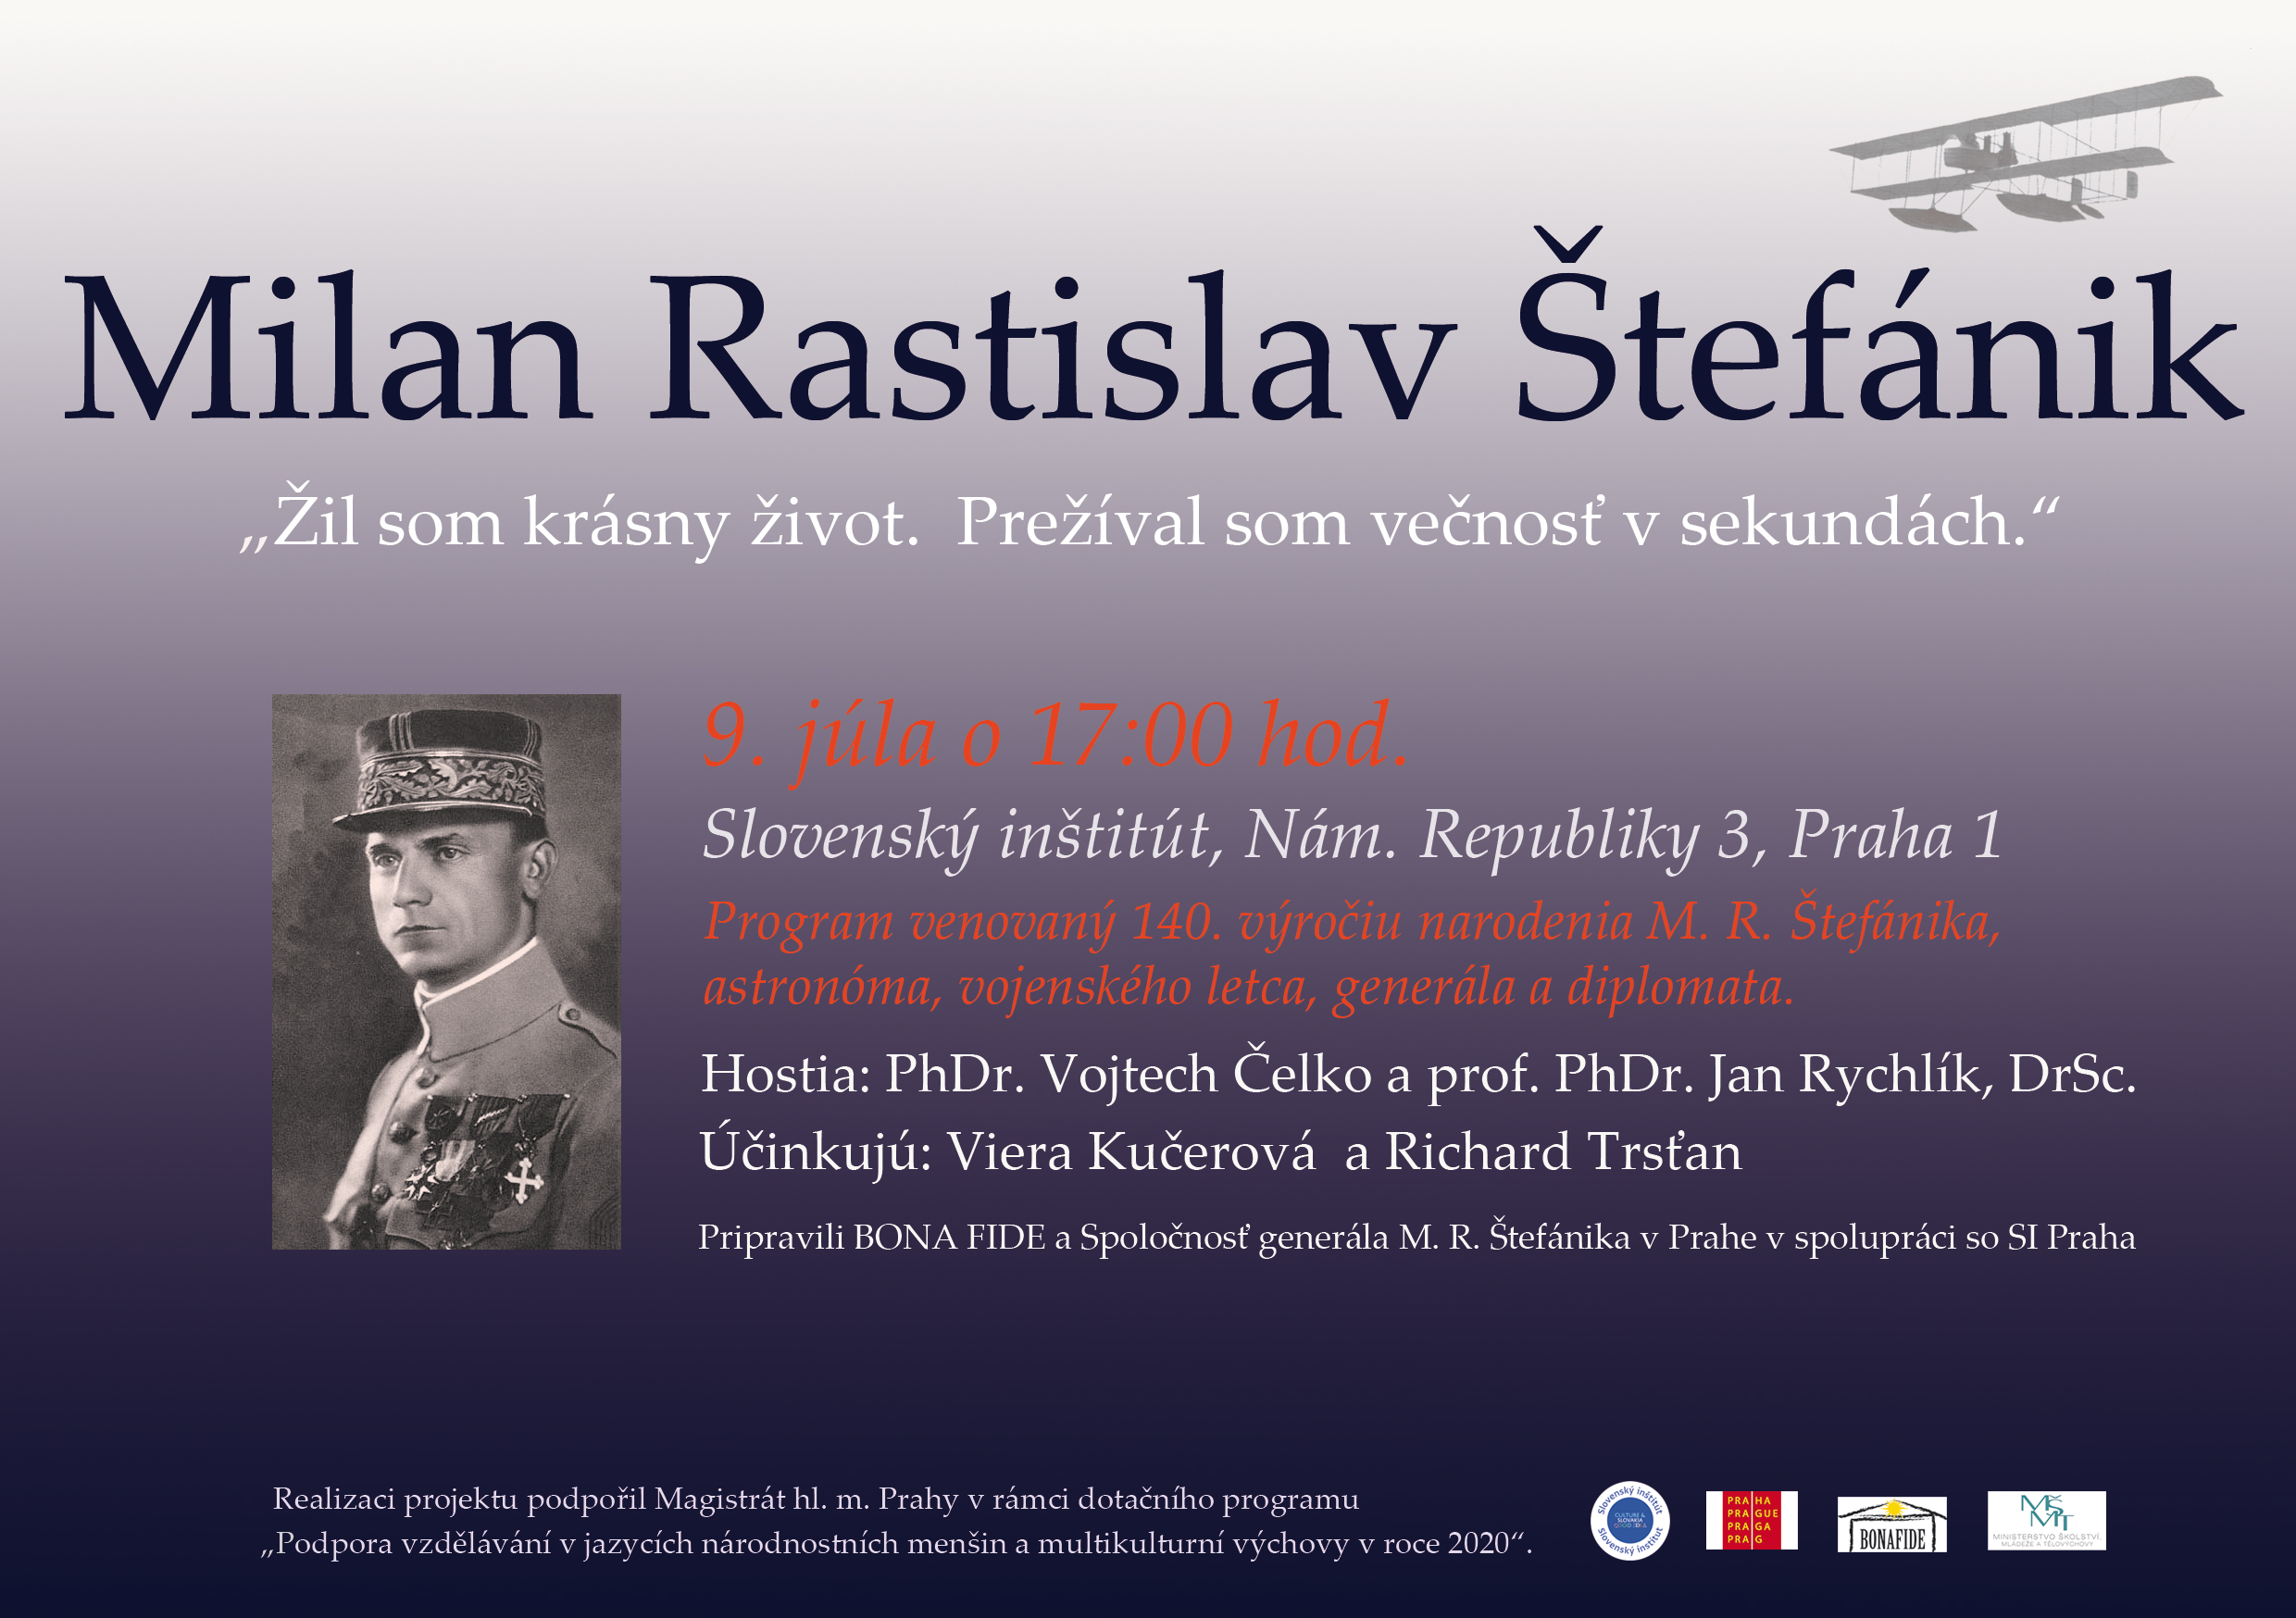 NOVÉ - - - Milan Rastislav Štefánik - 140. výročie narodenia M. R. Štefánika, zakladateľa Československej republiky, astronóma, vojenského letca, generála a diplomata